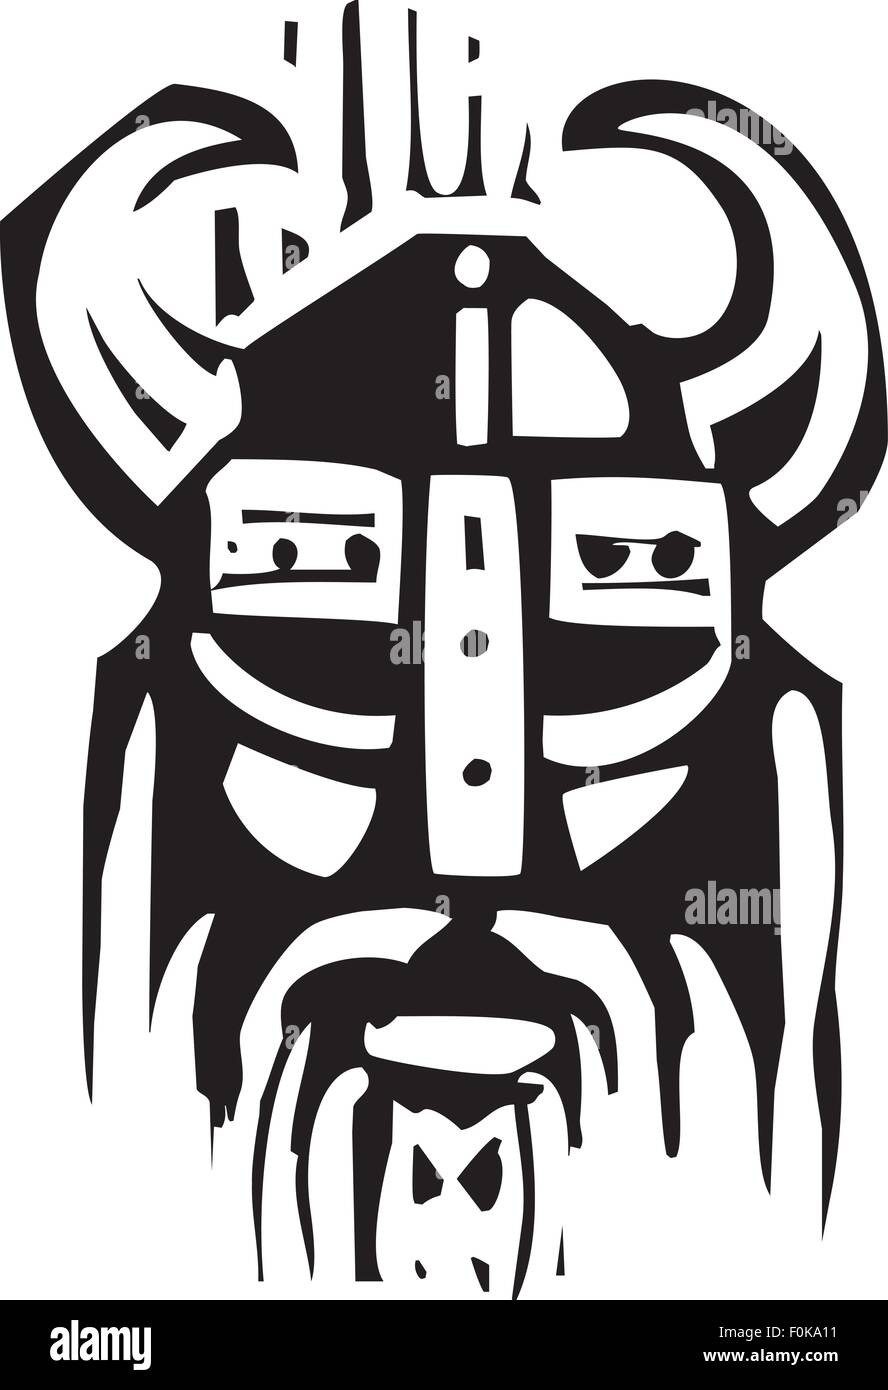 Holzschnitt expressionistische Bild o ein Gesicht ein Wikinger-Krieger Stock Vektor